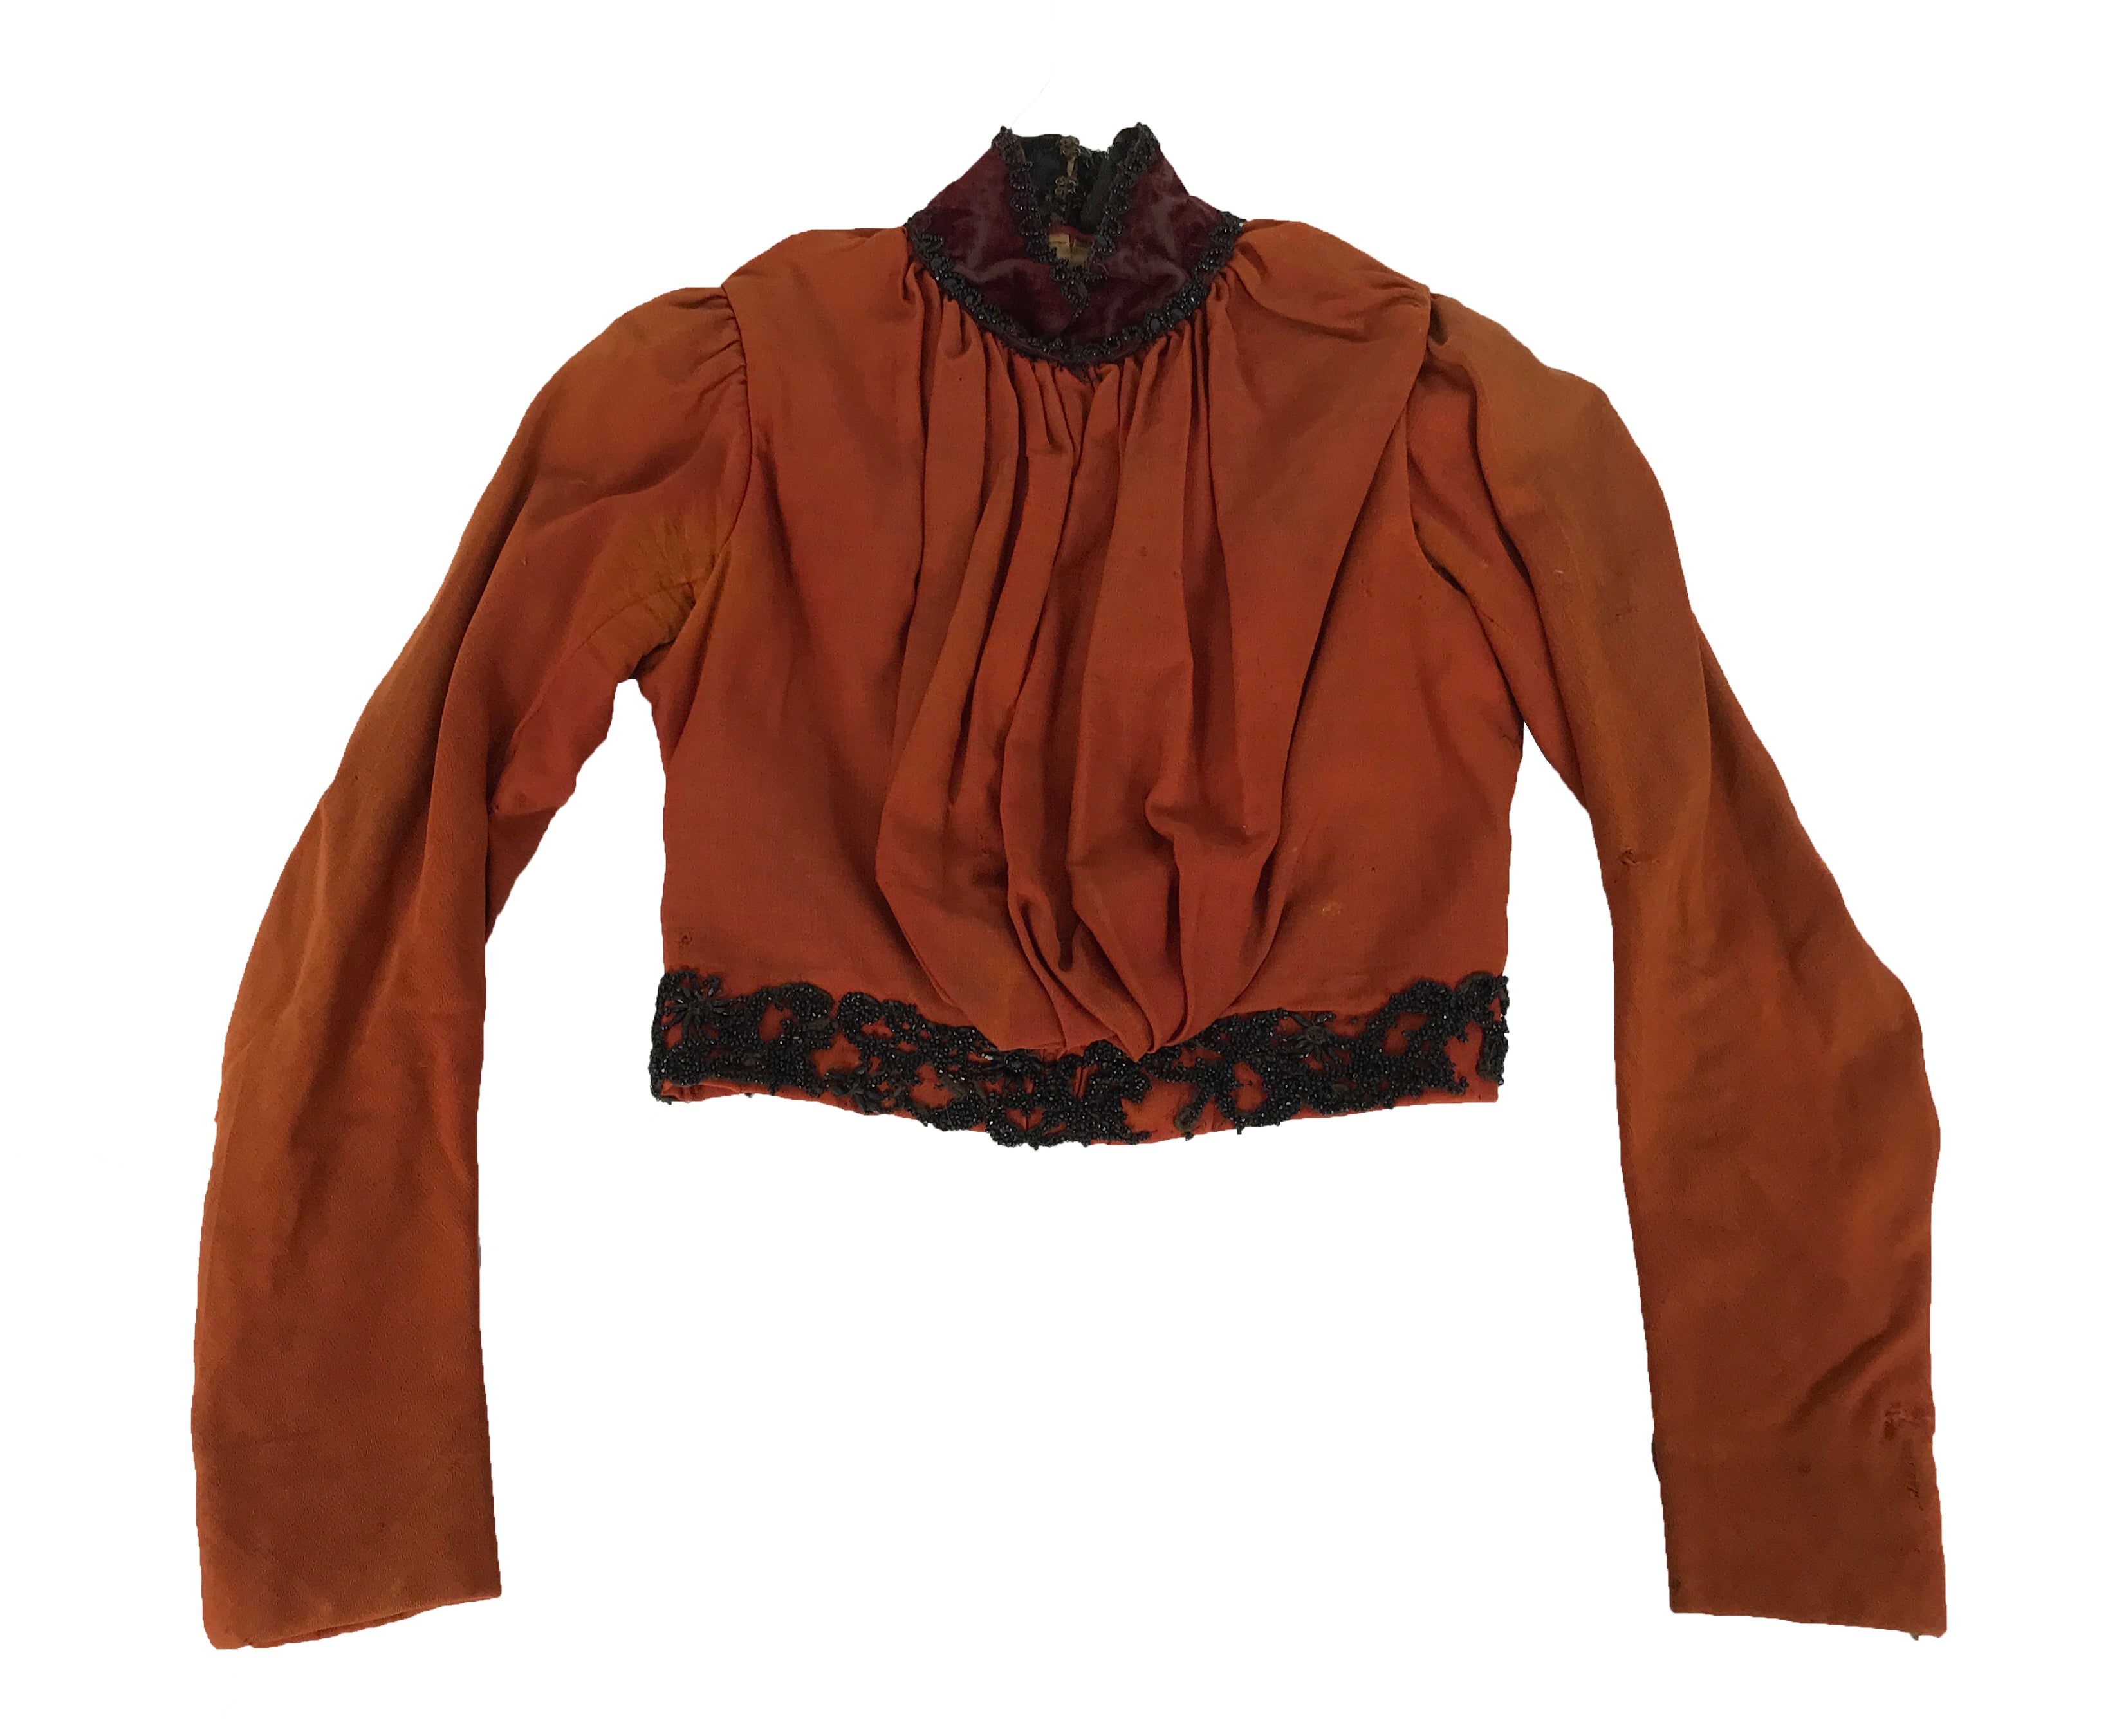 Vintage Early Edwardian Orange Bodice and Skirt Set